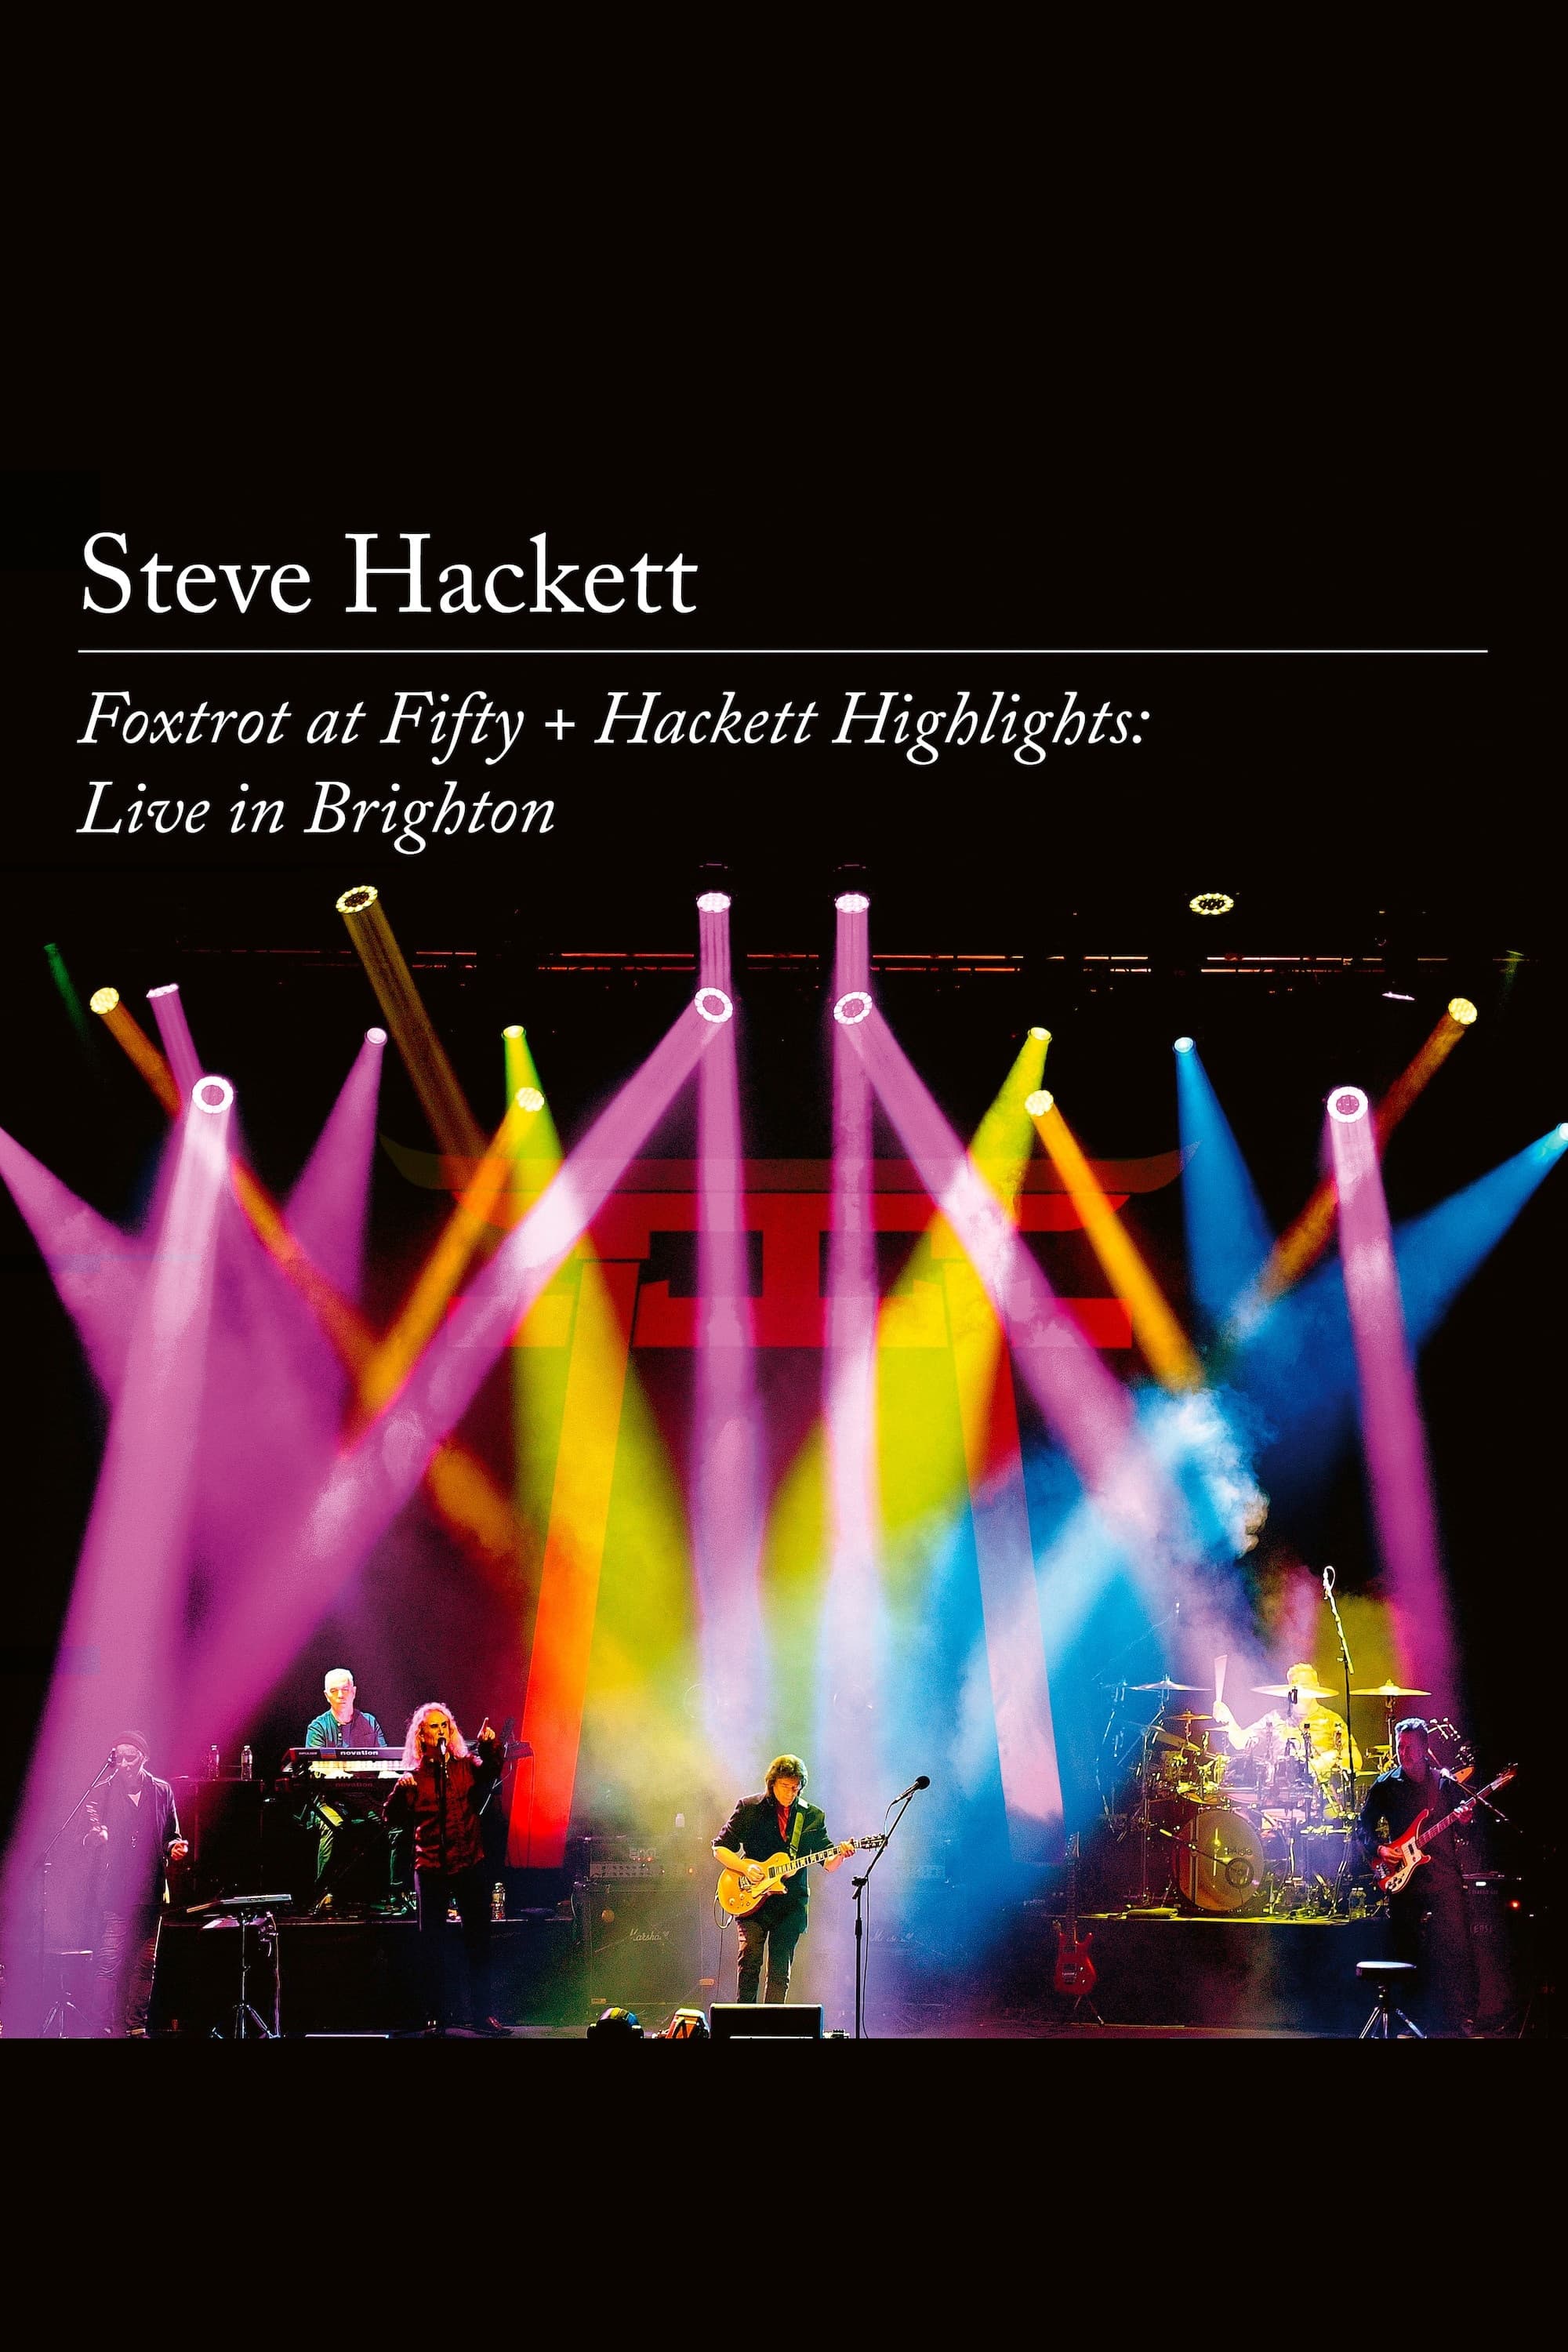 Steve Hackett | Foxtrot at Fifty + Hackett Highlights: Live in Brighton